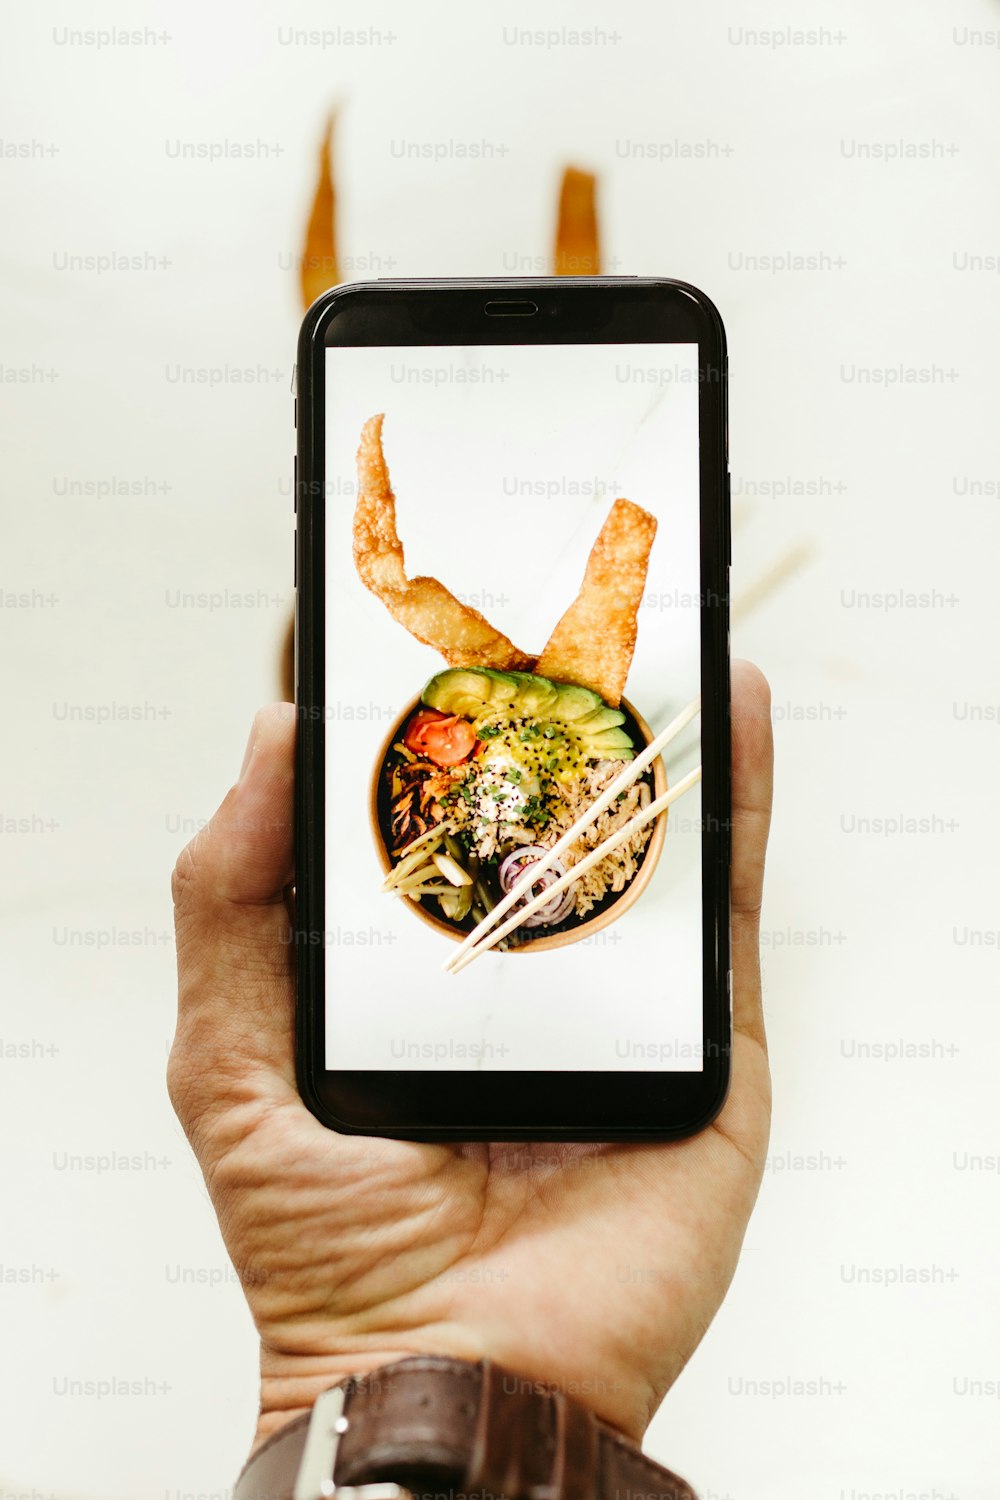 食べ物のボウルの写真が描かれたスマートフォンを持っている人